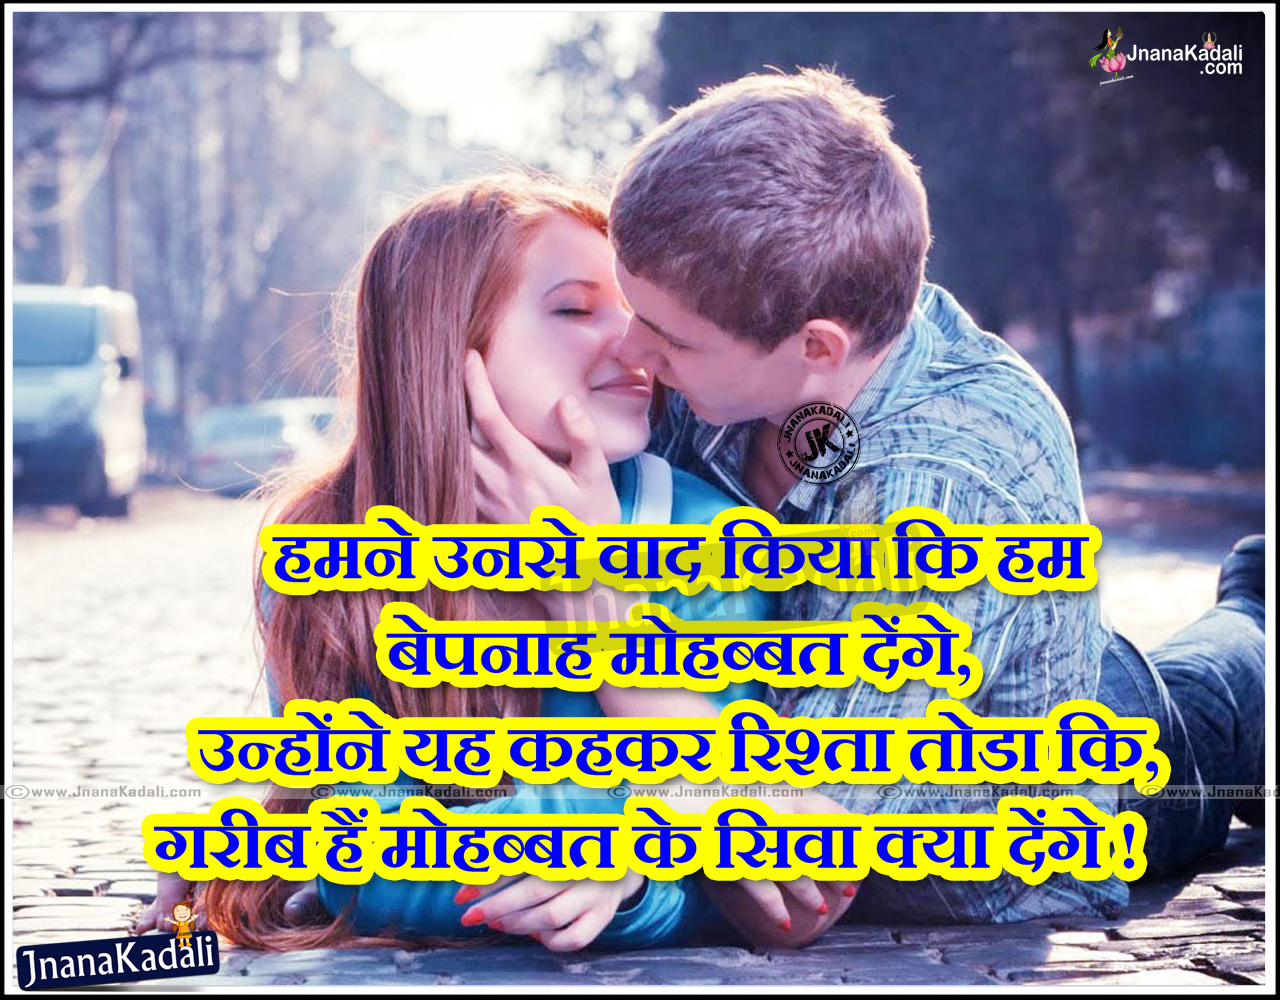 Best Hindi Love Quotations Hindi Love Greetings Love Quotes in Hindi Font Hindi